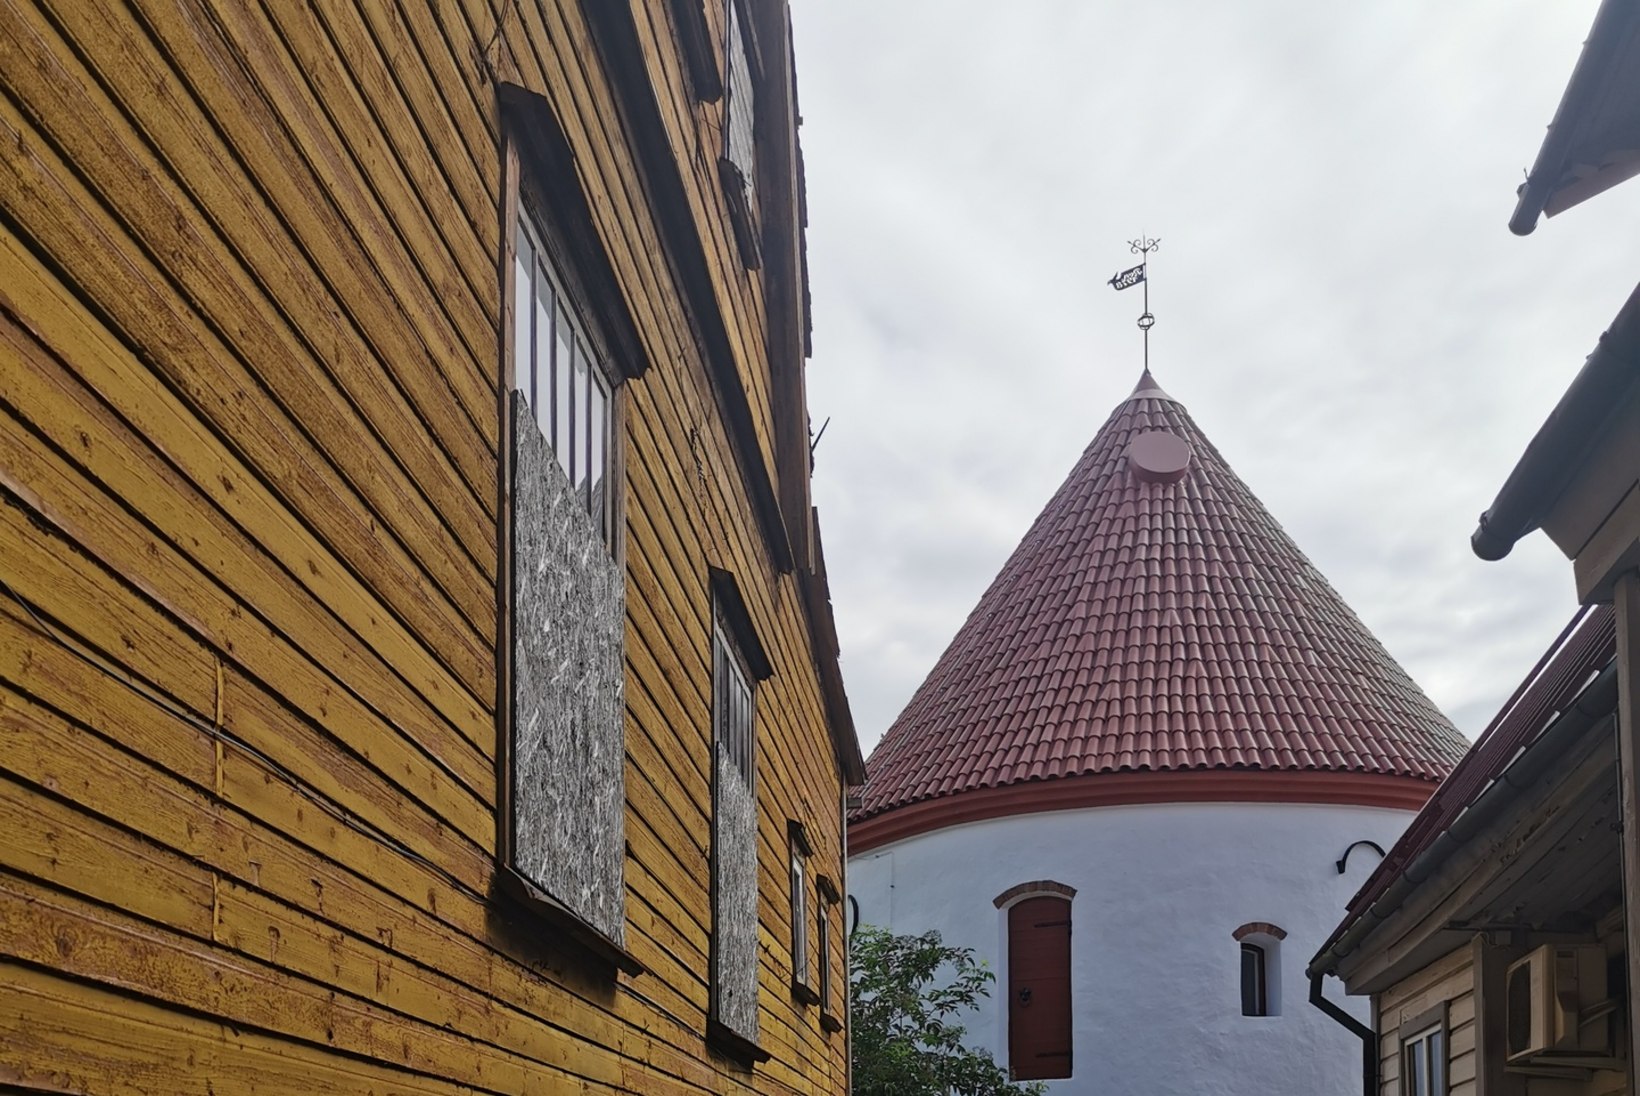 ÜHE TORNI LUGU: Punane torn – ainus mälestusmärk keskaegsest Pärnust